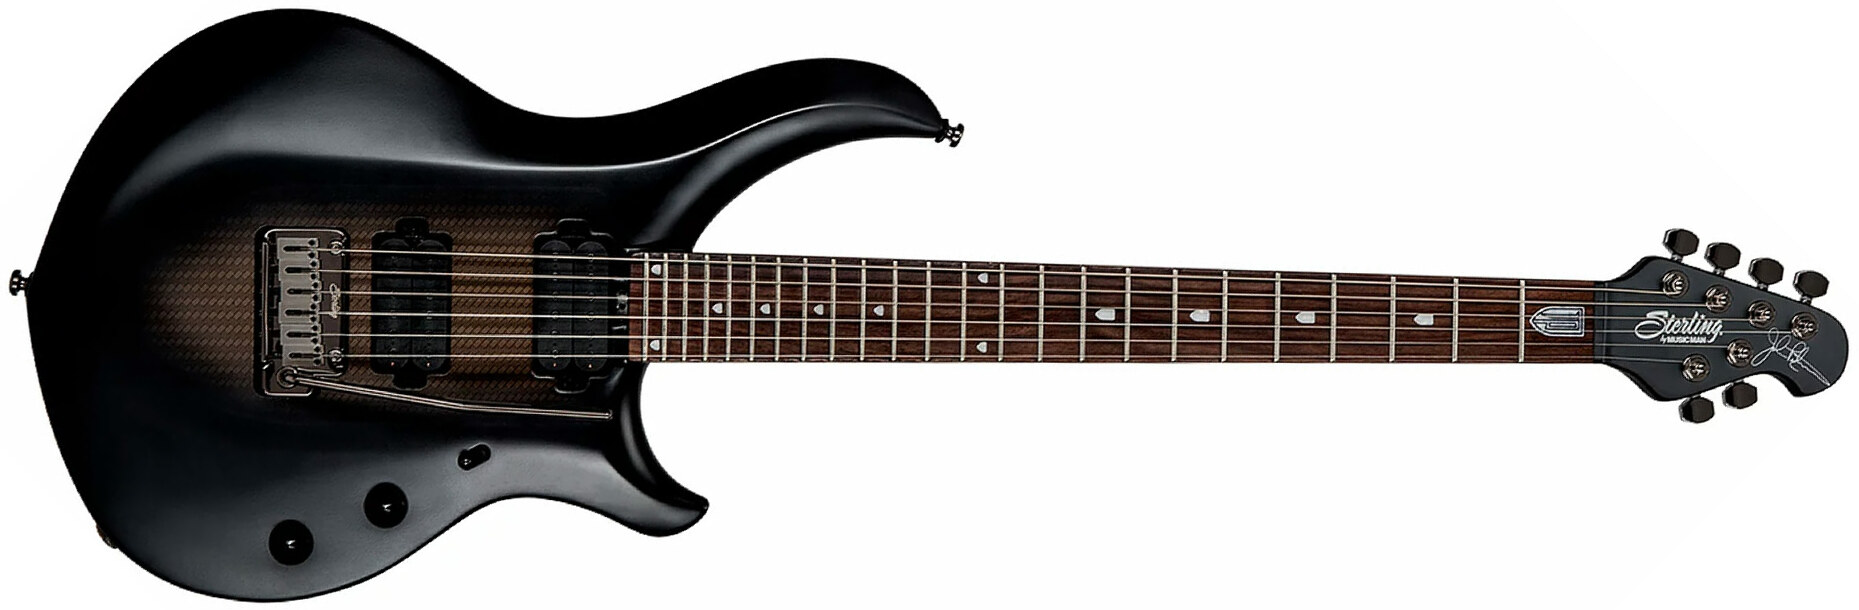 Sterling By Musicman John Petrucci Majesty Maj100 Signature Hh Trem Rw - Stealth Black - E-Gitarre in Str-Form - Main picture